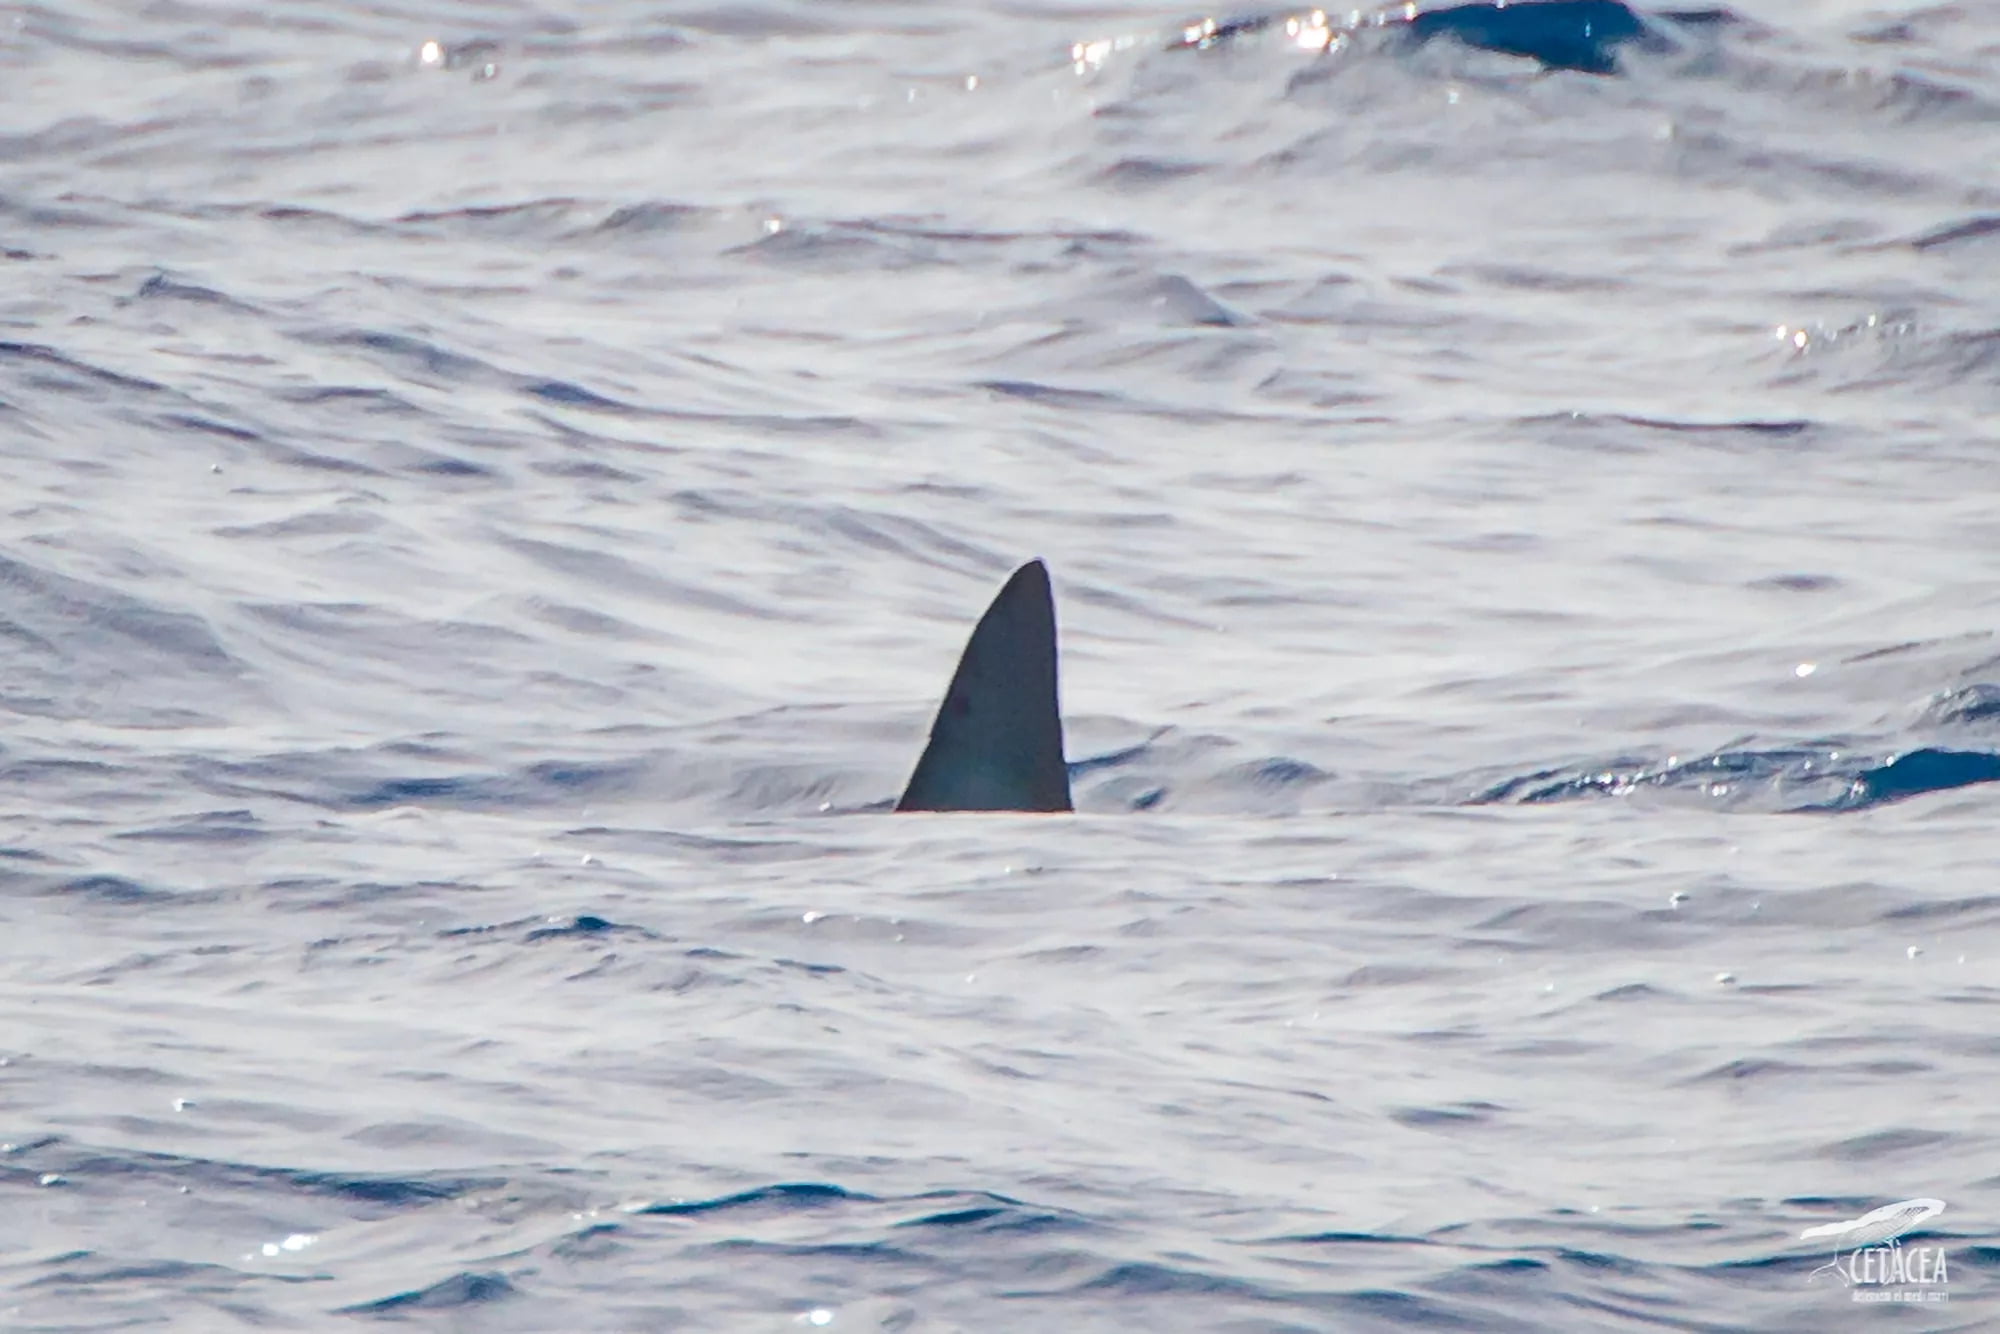 El tiburón más rápido del mundo visto en mar español